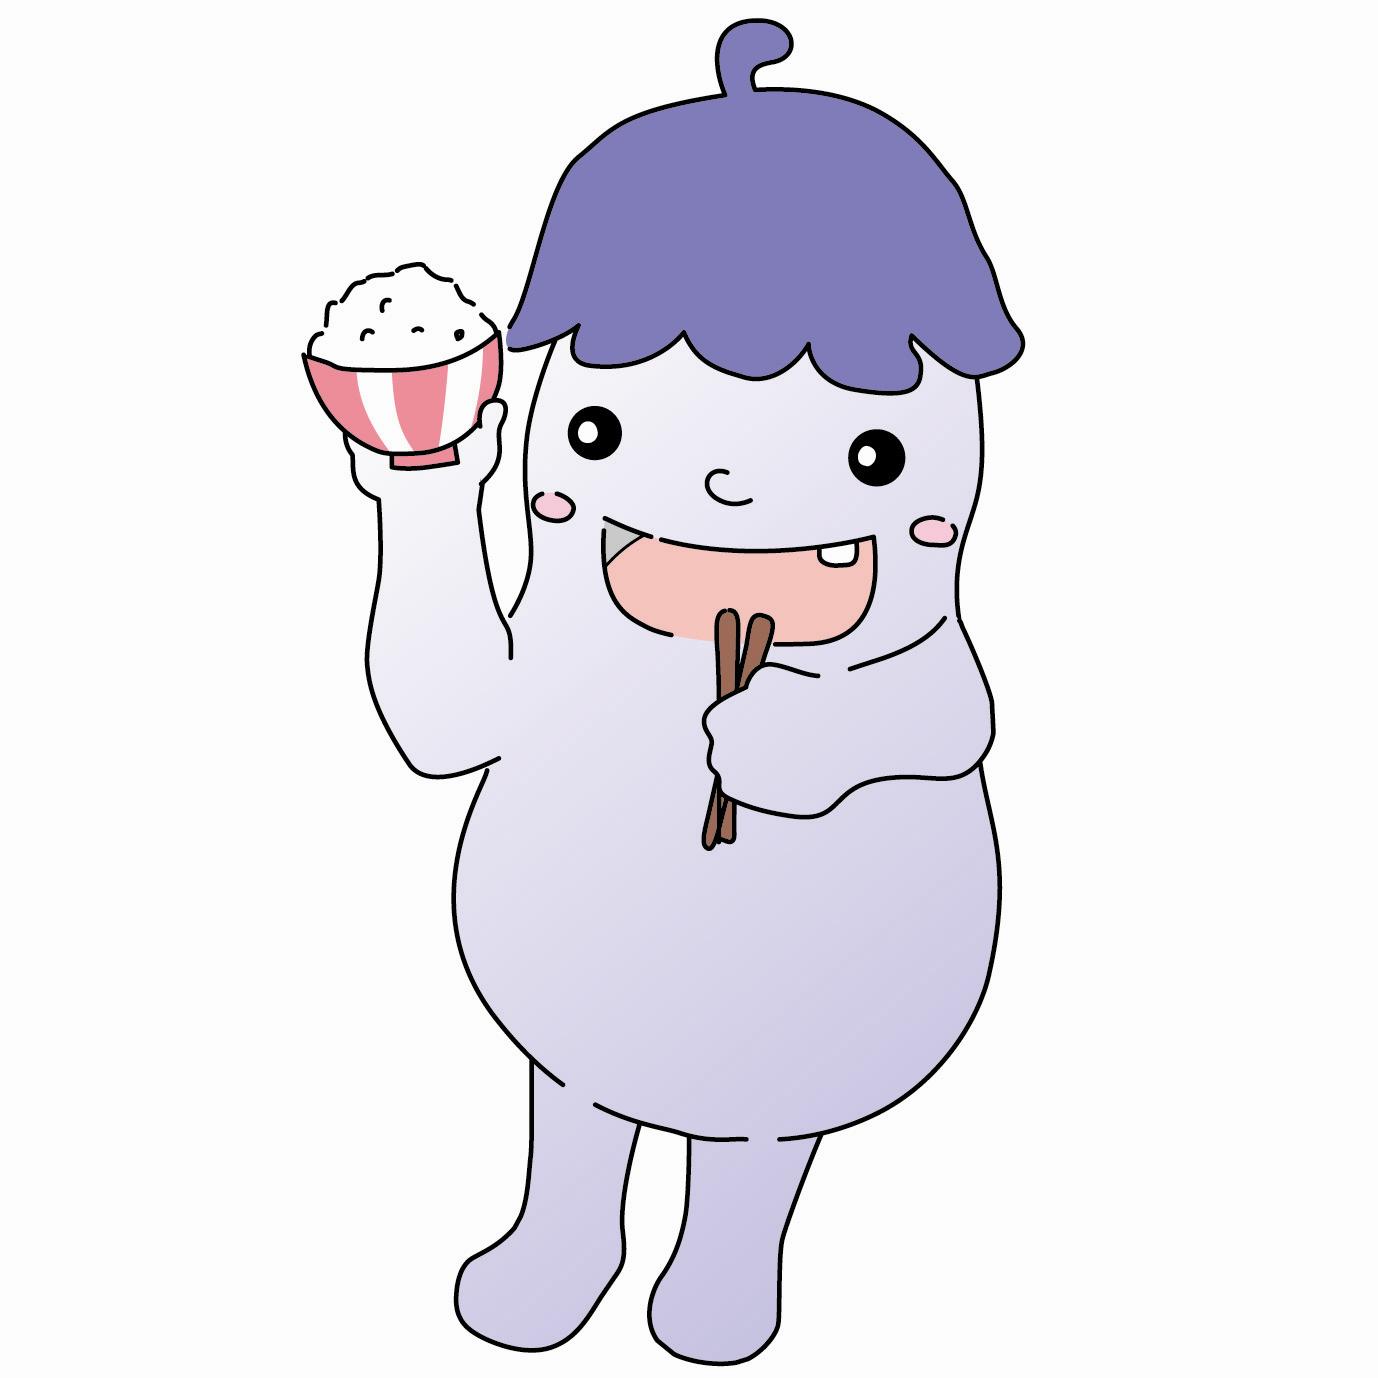 松戸市食育シンボルキャラクター「ぱくちゃん」の画像